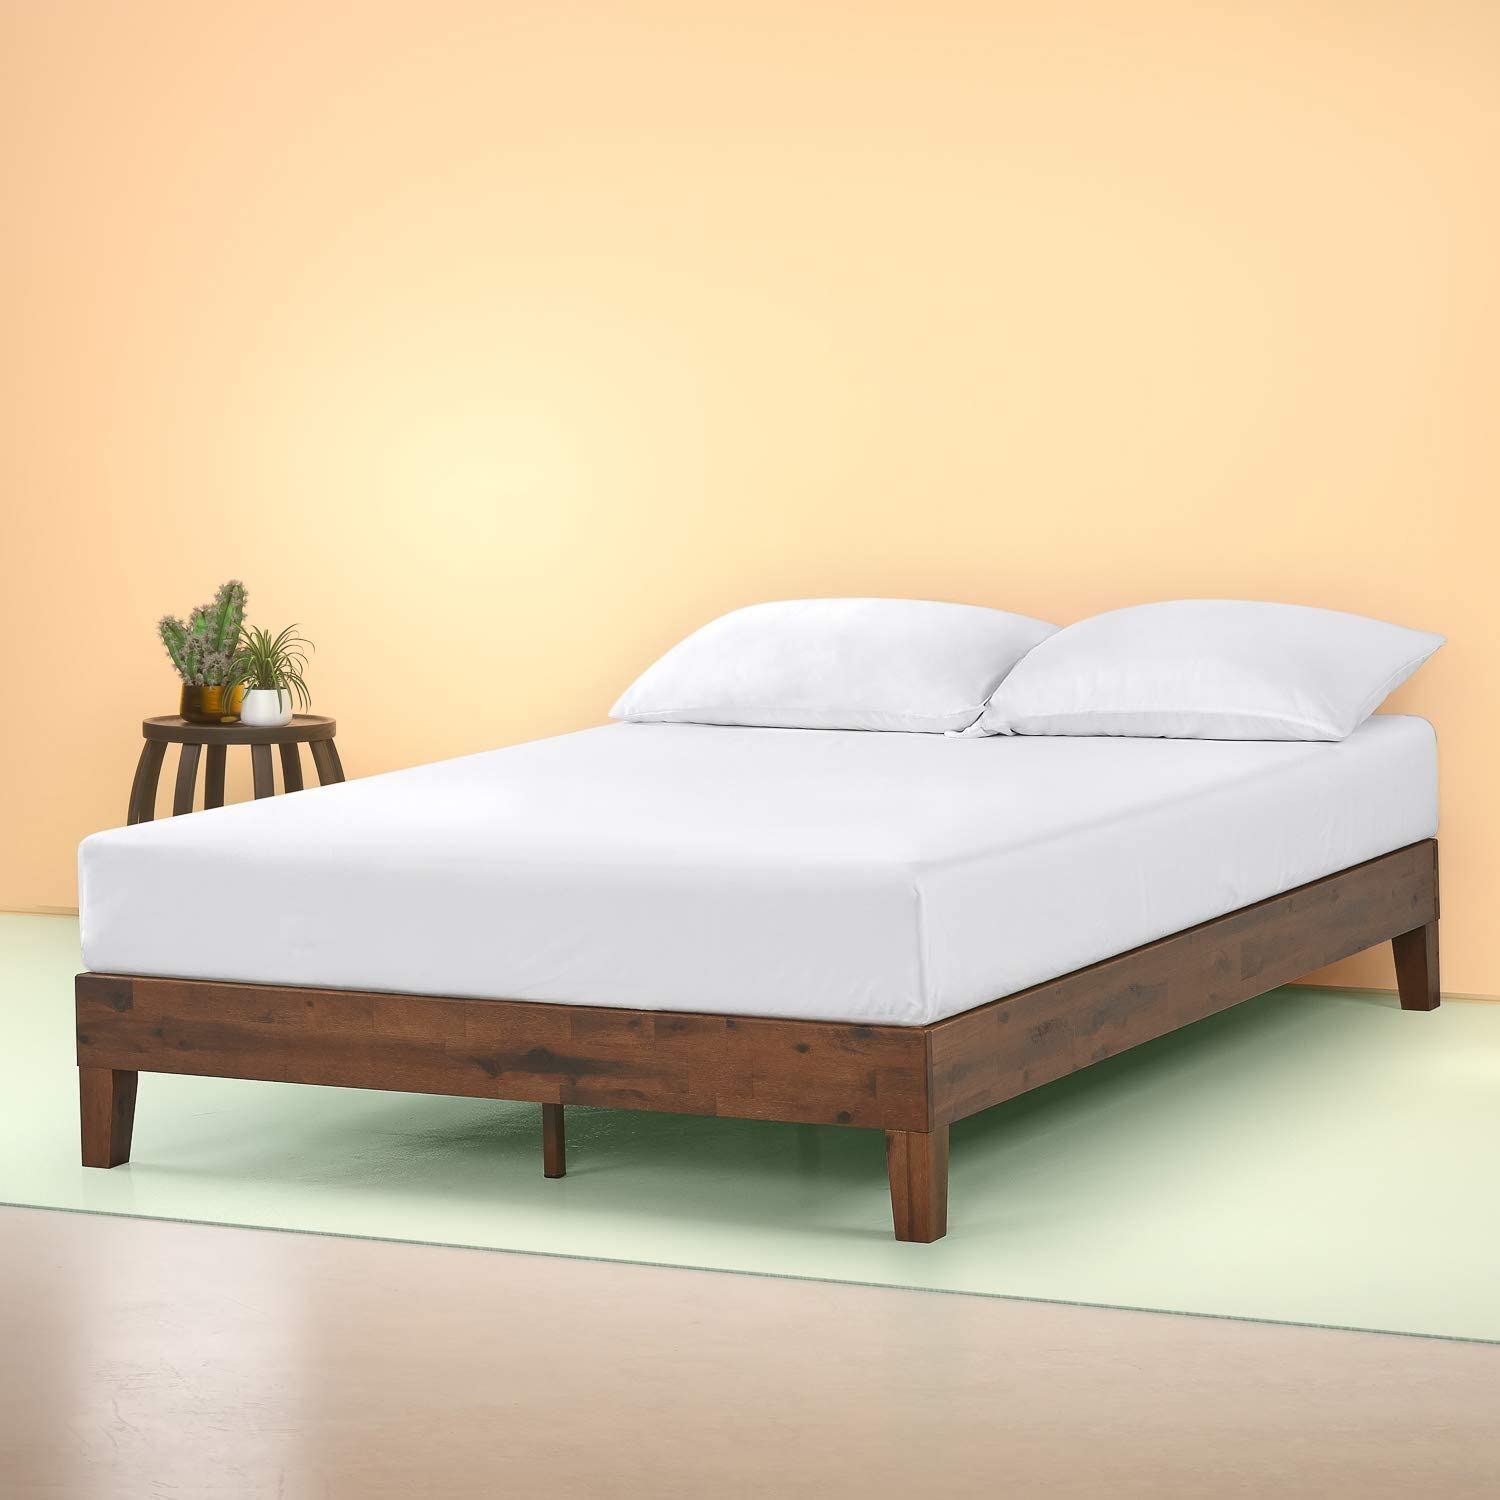 Solid Platform Bed No Slats Visualhunt, King Size Bed Frame No Headboard